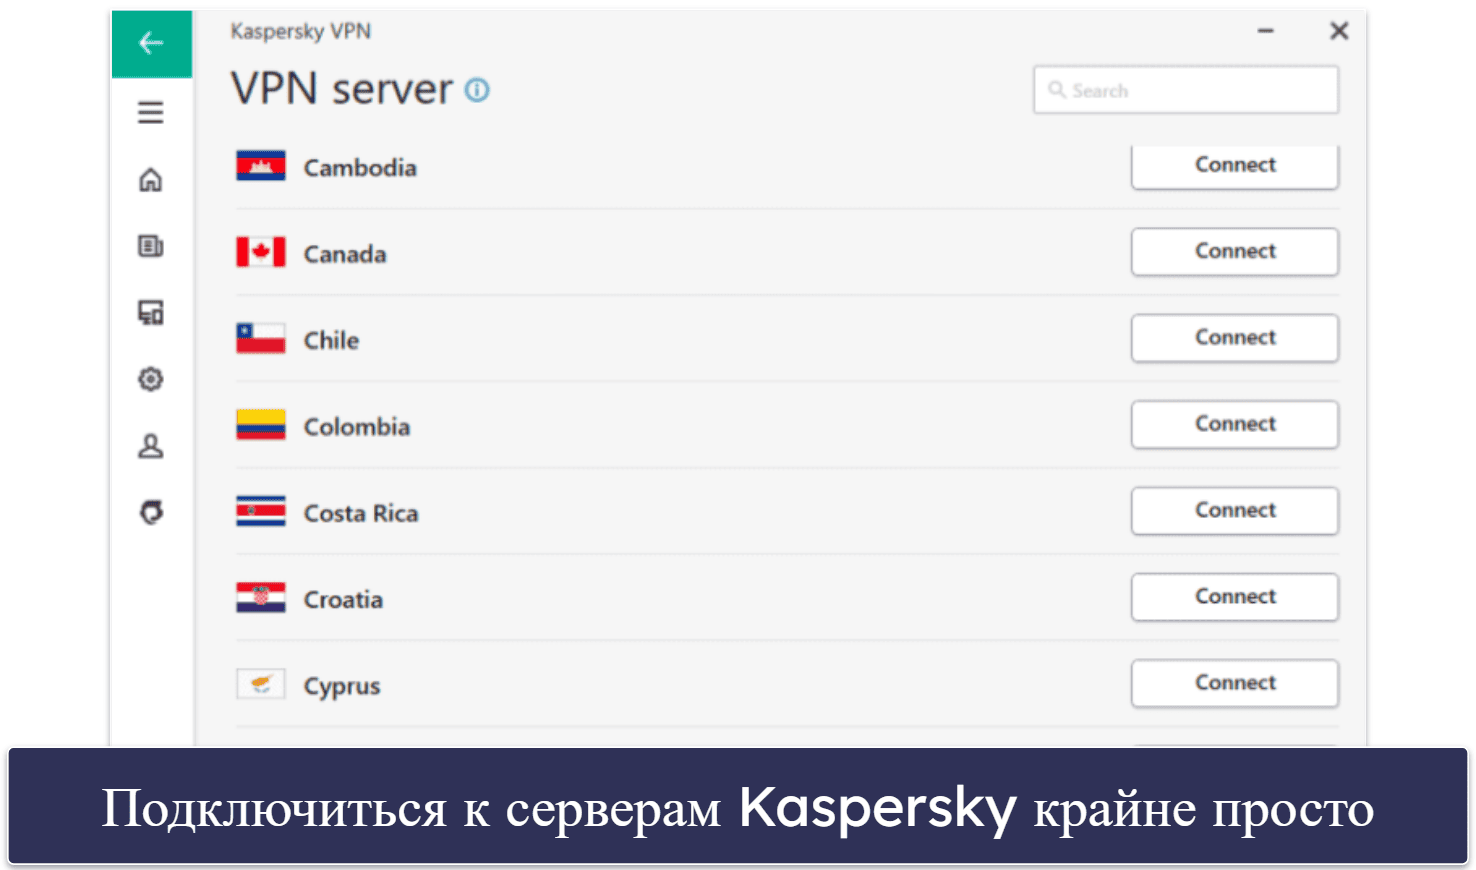 8. Kaspersky — антивирус с хорошим родительским контролем и неплохим VPN-сервисом для потоковых трансляций